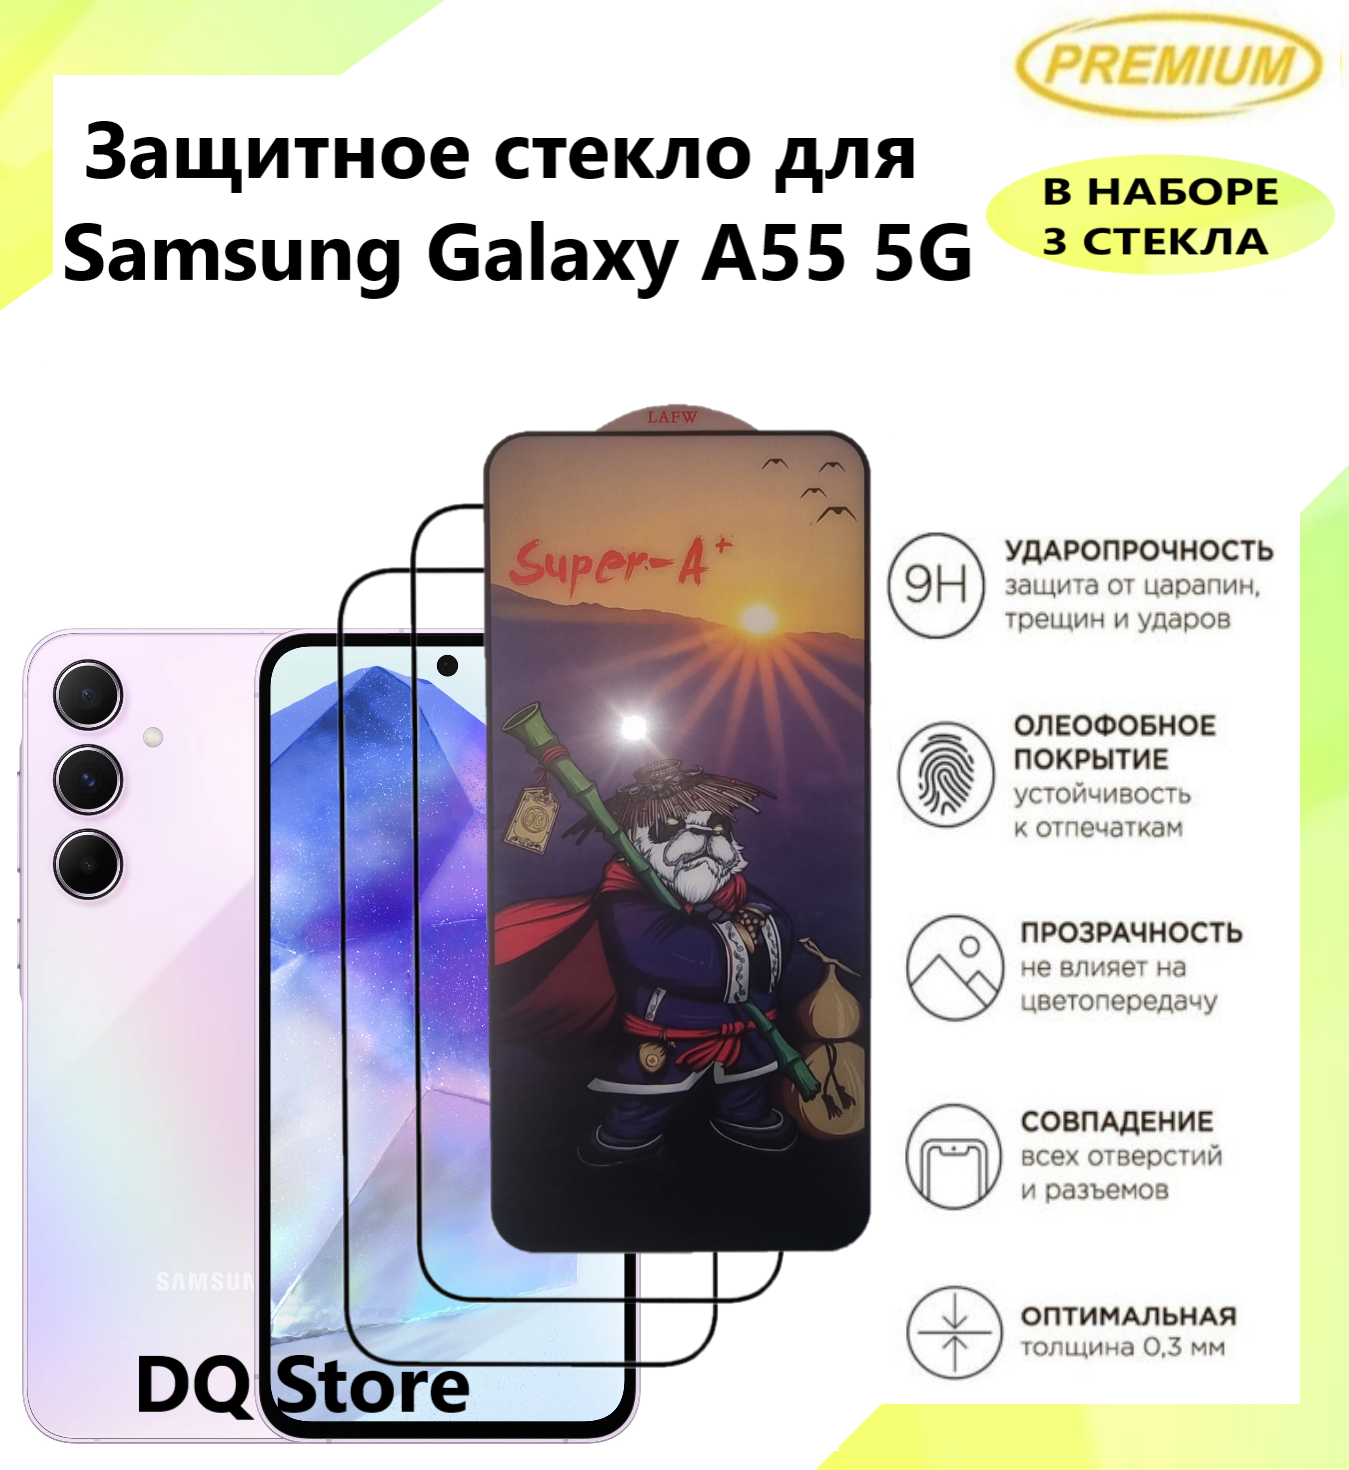 2 Защитных стекла для Samsung Galaxy A55 5G / Самсунг Галакси А55 . Полноэкранные защитные стекла с олеофобным покрытием Premium